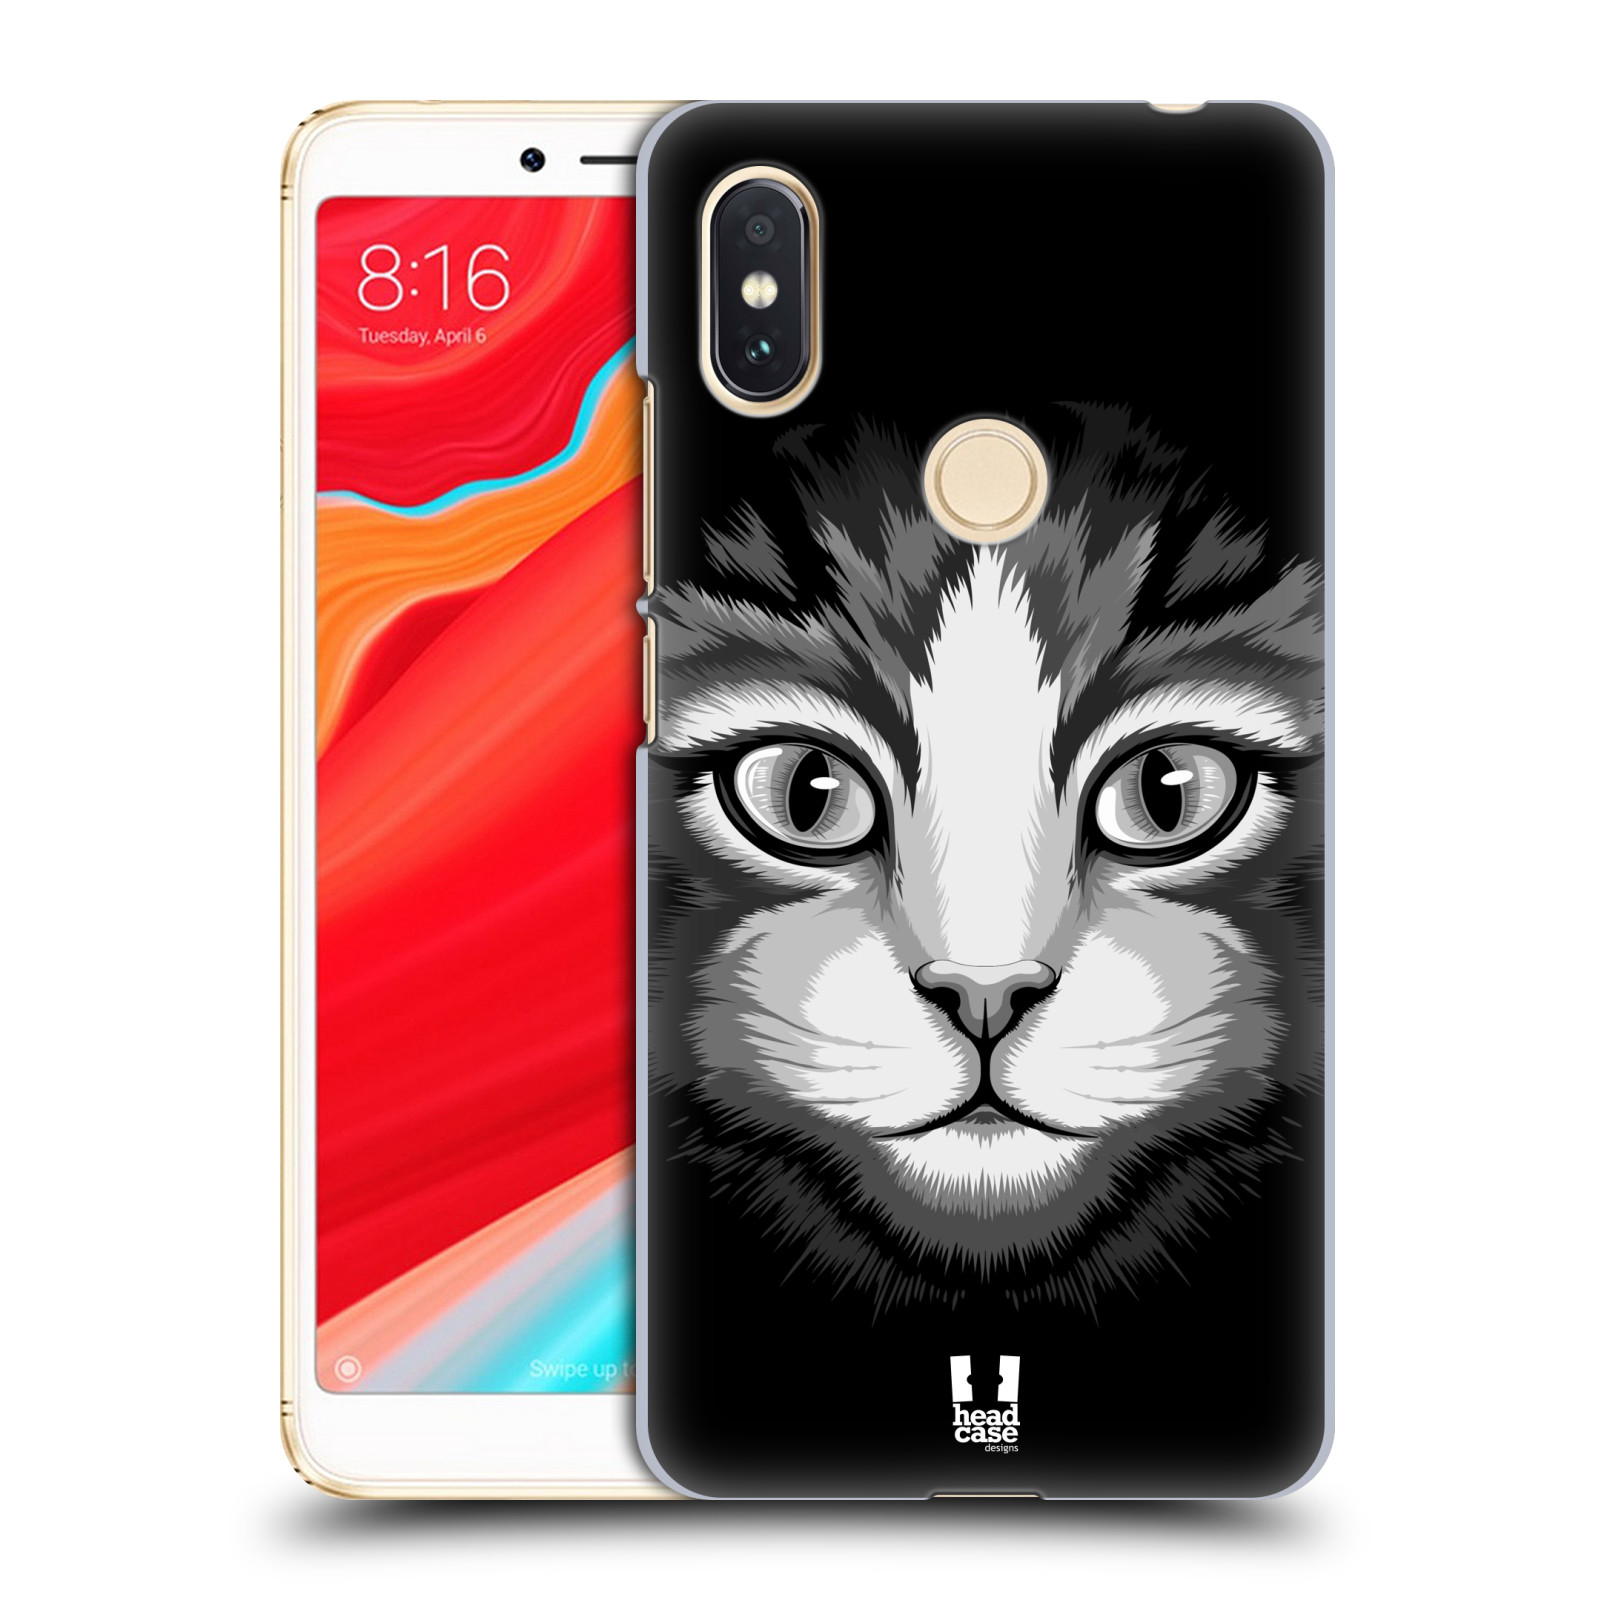 HEAD CASE plastový obal na mobil Xiaomi Redmi S2 vzor Zvíře kreslená tvář 2 kočička